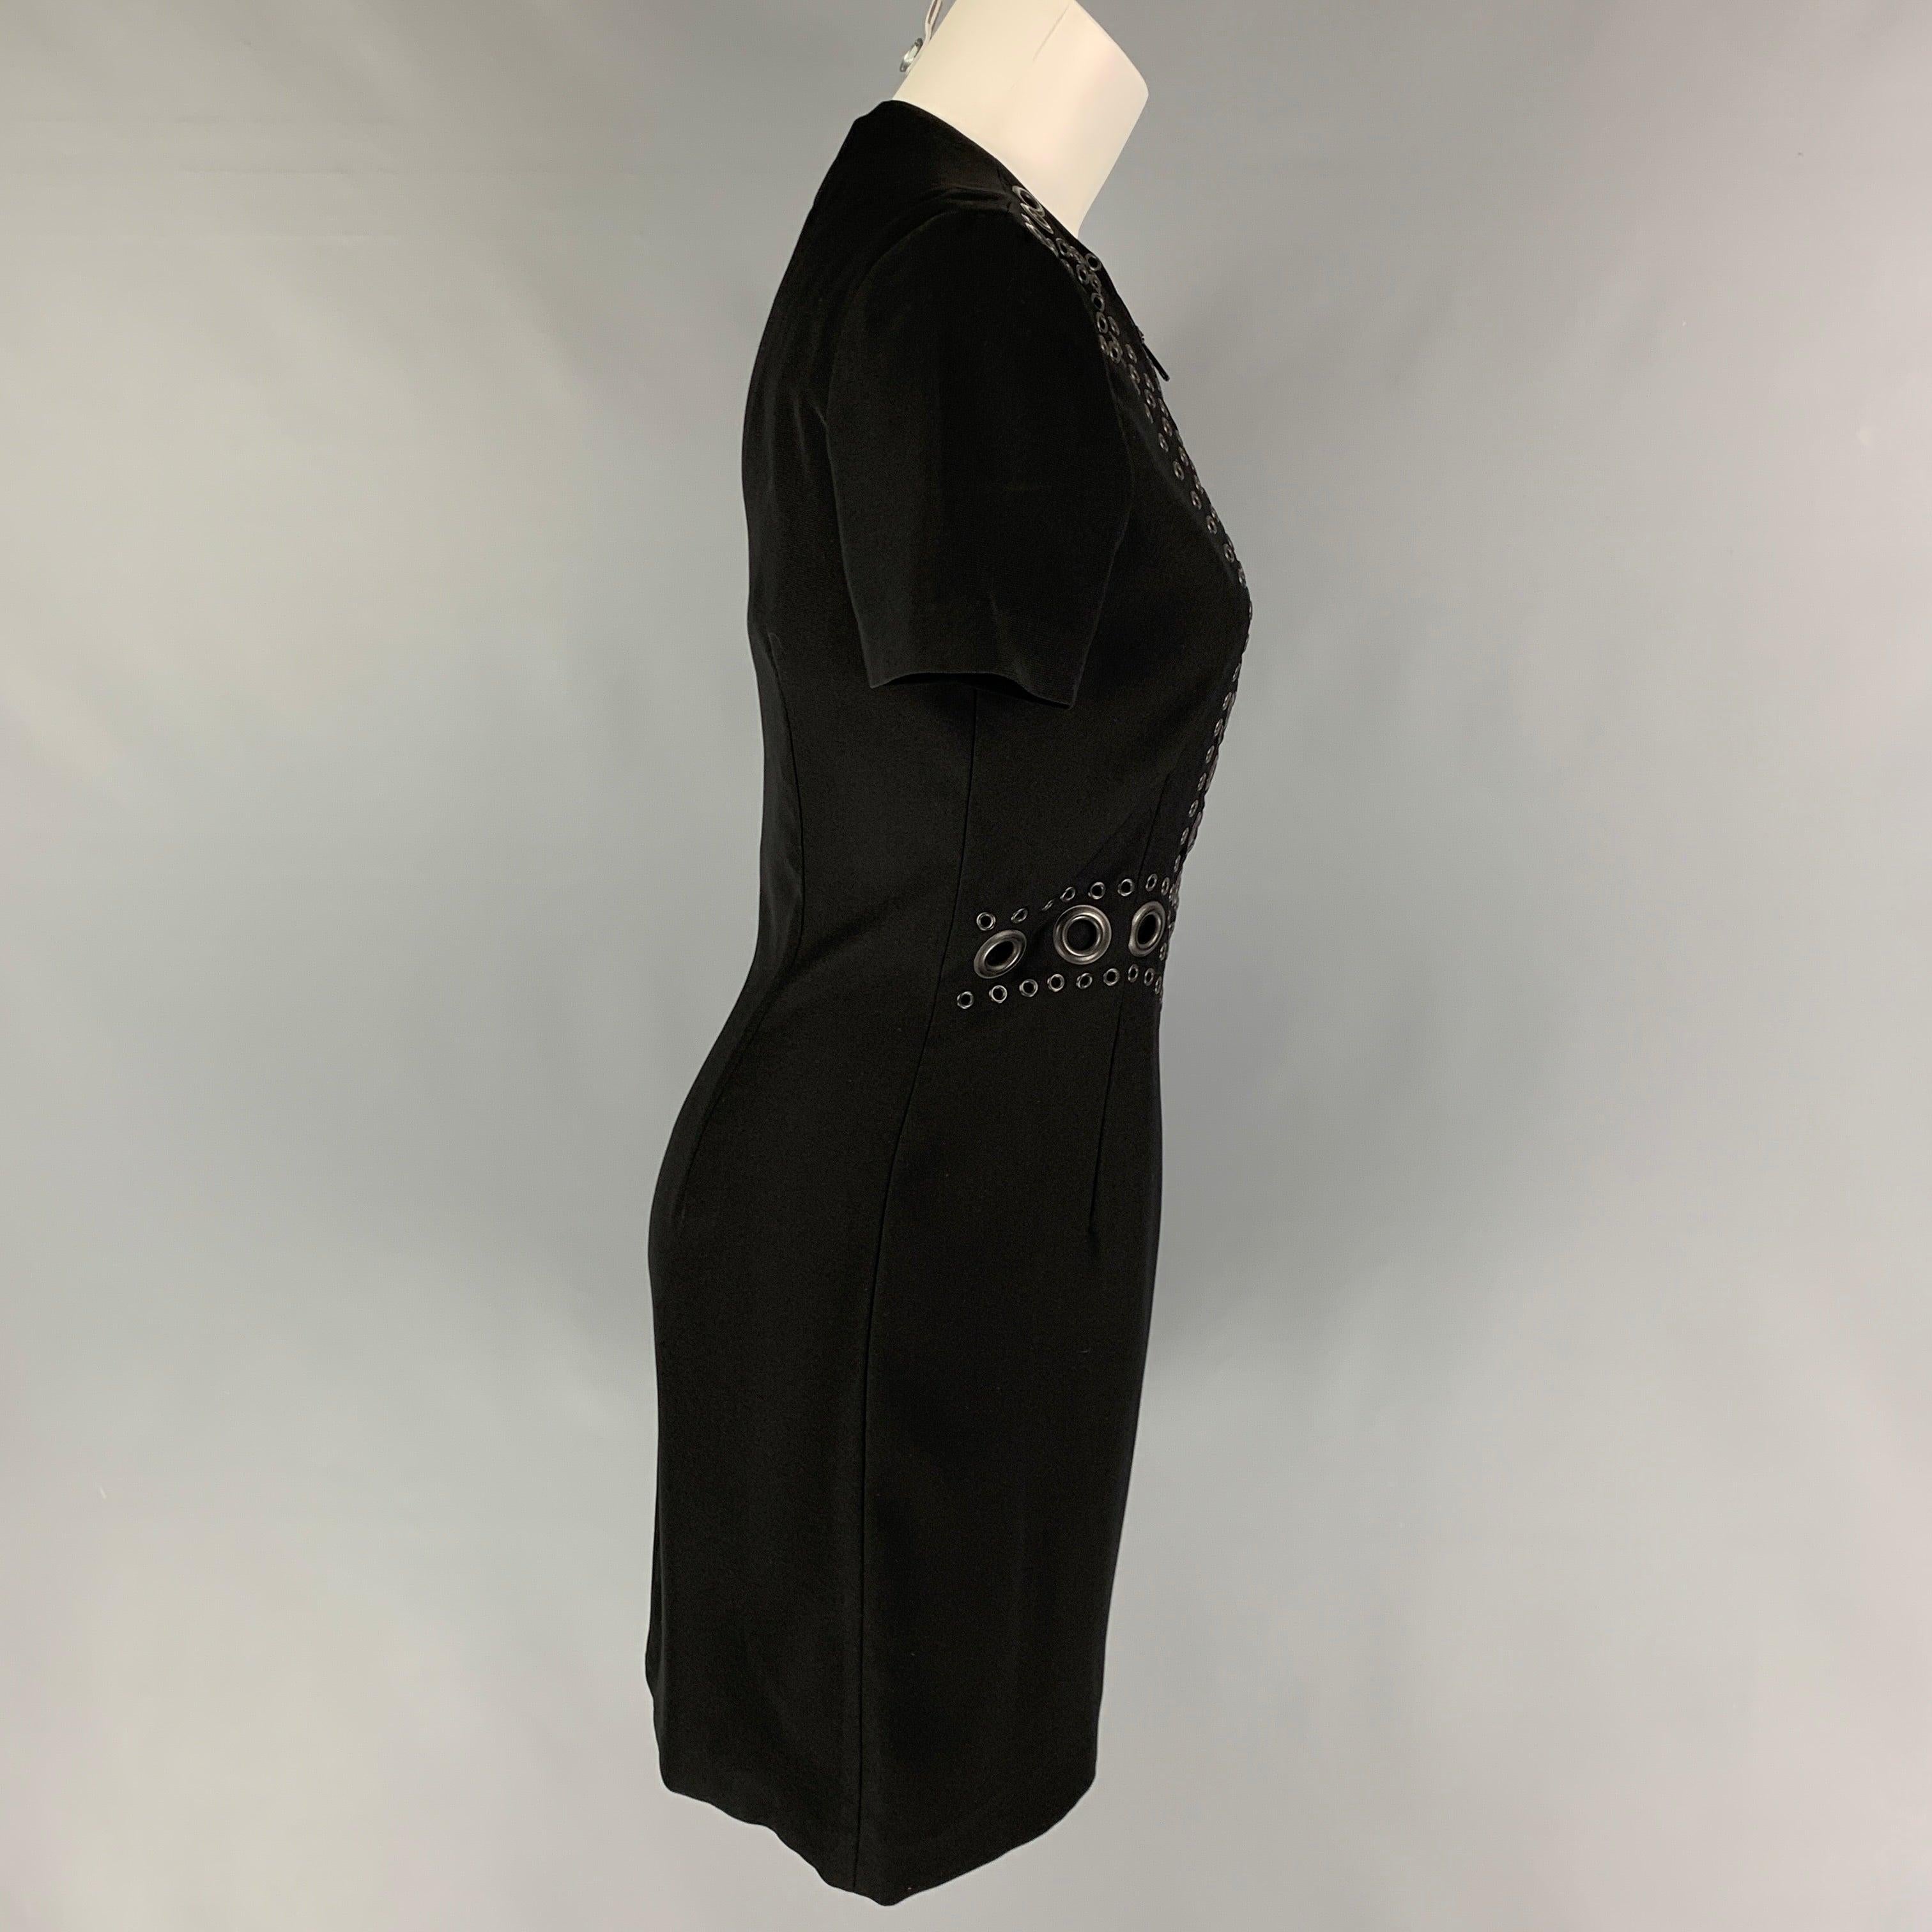 Das Kleid von GIVENCHY ist aus schwarzem Polyester gefertigt und hat vorne eine Öse aus Rotguss, kurze Ärmel und einen halben Reißverschluss vorne.
Sehr gut
Gebrauchtes Zustand. 

Markiert:   40 

Abmessungen: 
 
Schultern: 15 Zoll  Oberweite: 33